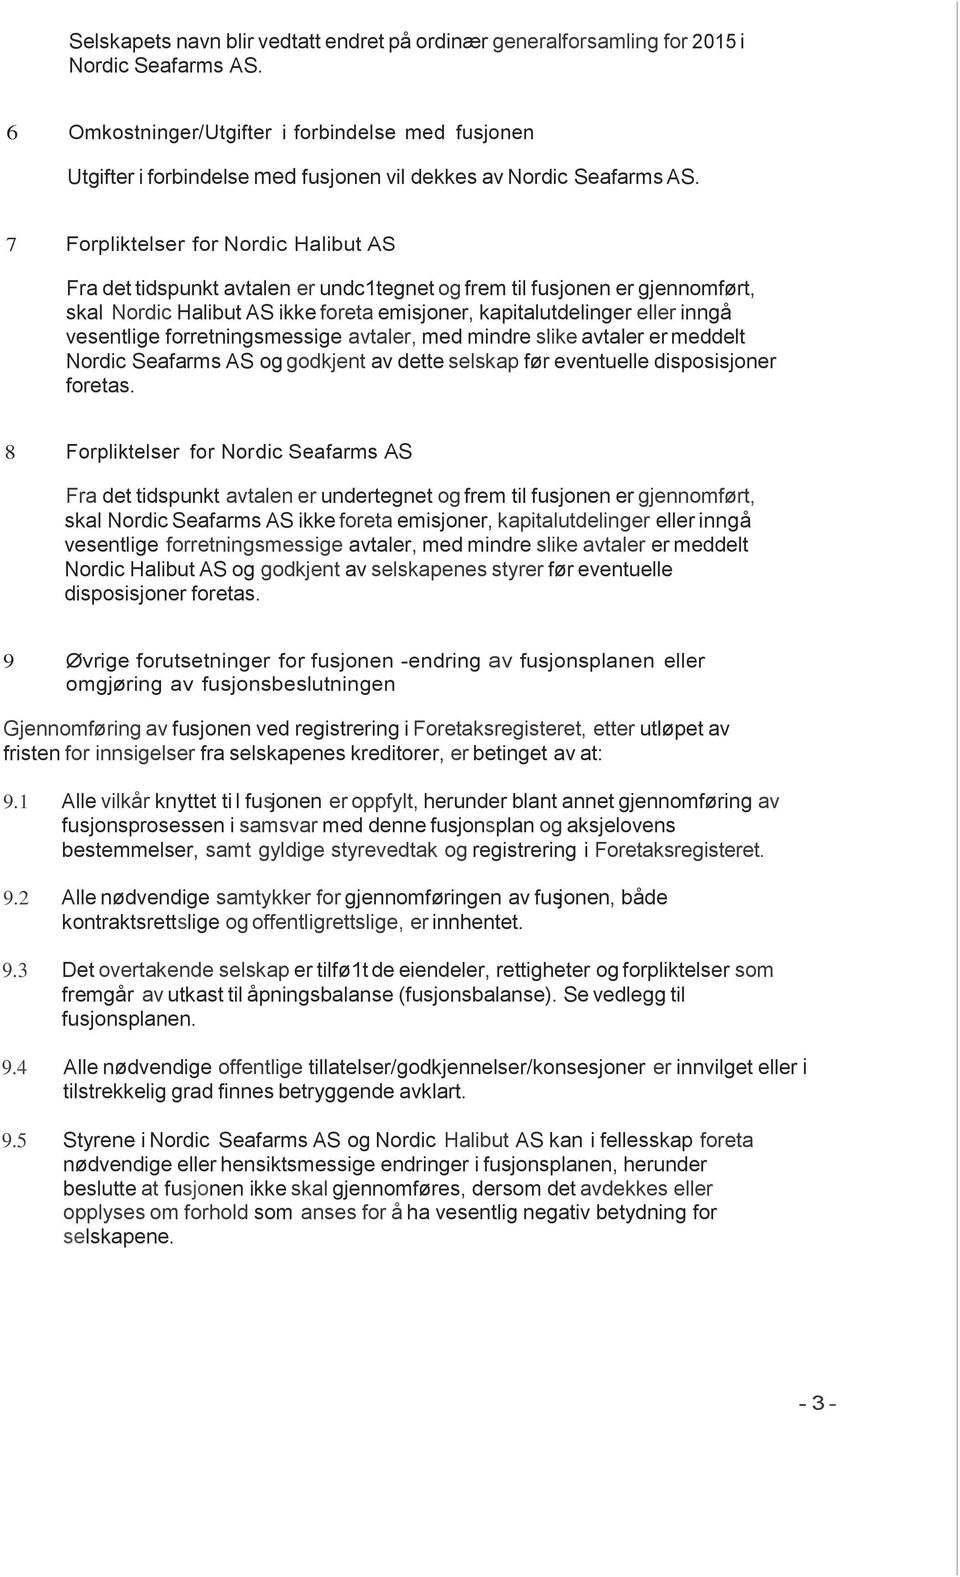 7 Forpliktelser for Nordic Halibut AS Fra det tidspunkt avtalen er undc1tegnet og frem til fusjonen er gjennomført, skal Nordic Halibut AS ikke foreta emisjoner, kapitalutdelinger eller inngå